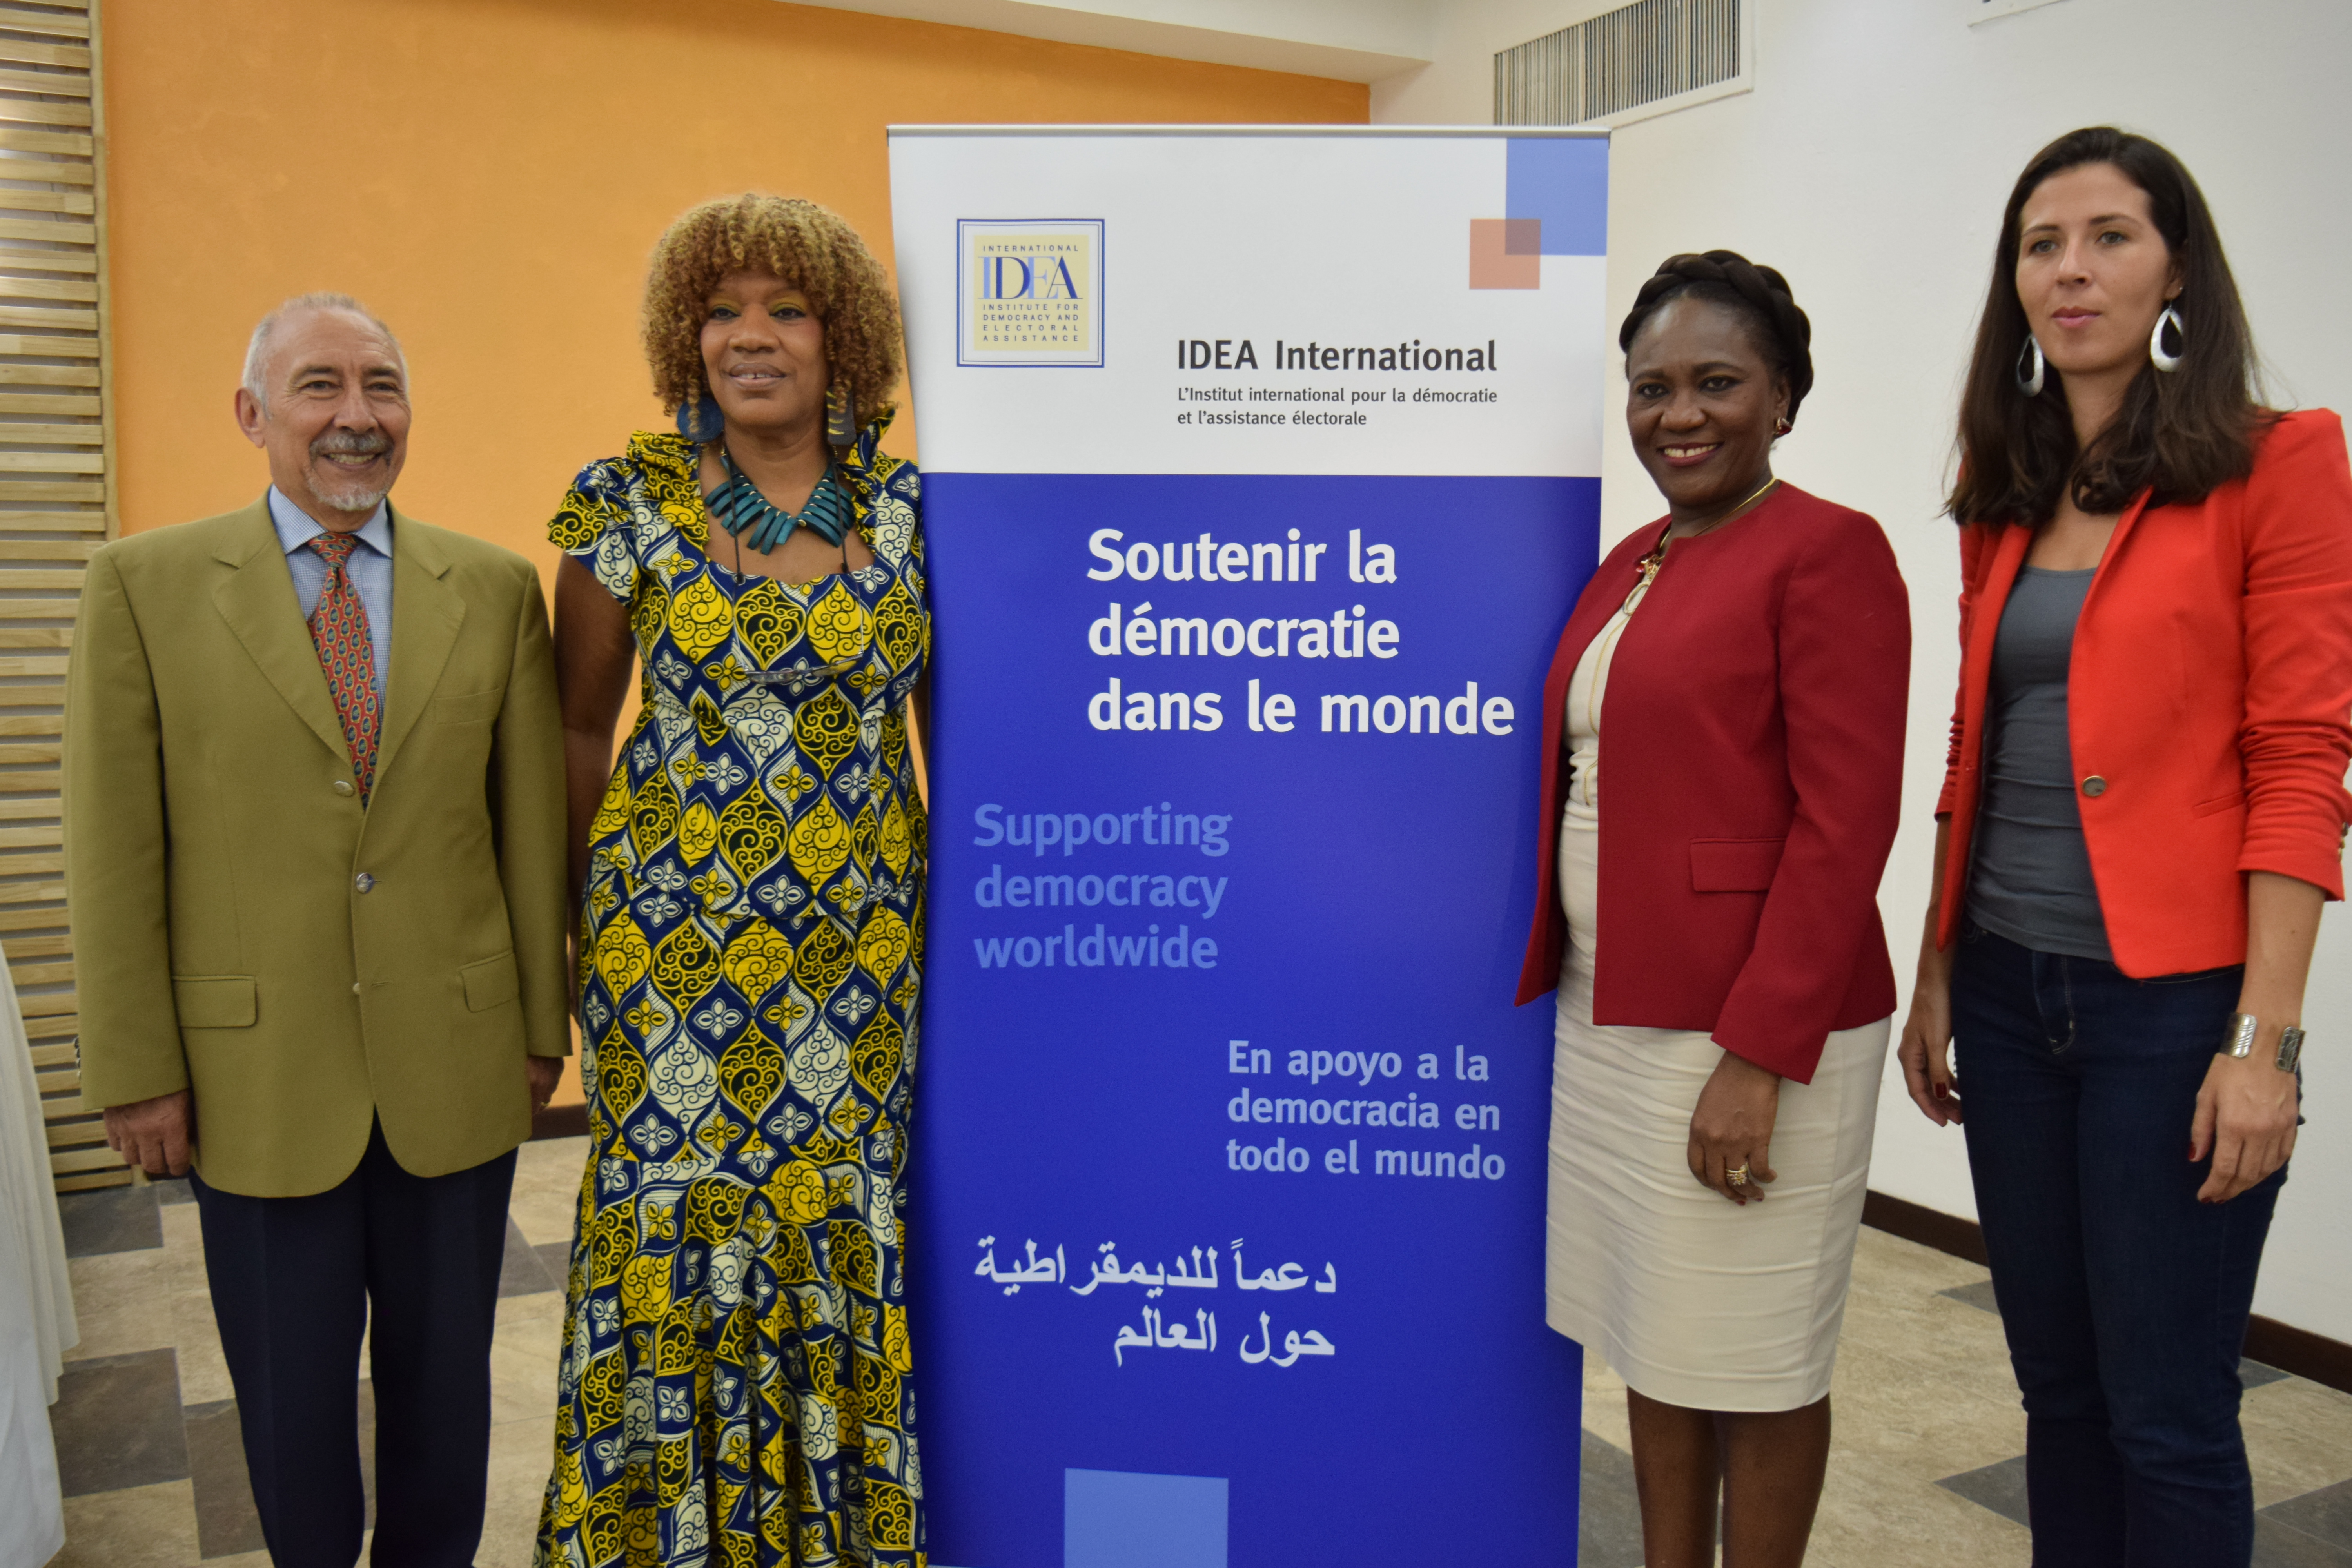 De izquierda a derecha: Alfonso Ferrufino, Asesor principal de la oficina de IDEA en Bolivia; Marie-Laurence Jocelyn Lassègue, Directora de Programa en IDEA Internacional Haití; Eunide Innocent, Ministra de asuntos femeninos y derechos de la mujer en Haití; Marie Doucey, Oficial de Programa en IDEA Internacional Haití.